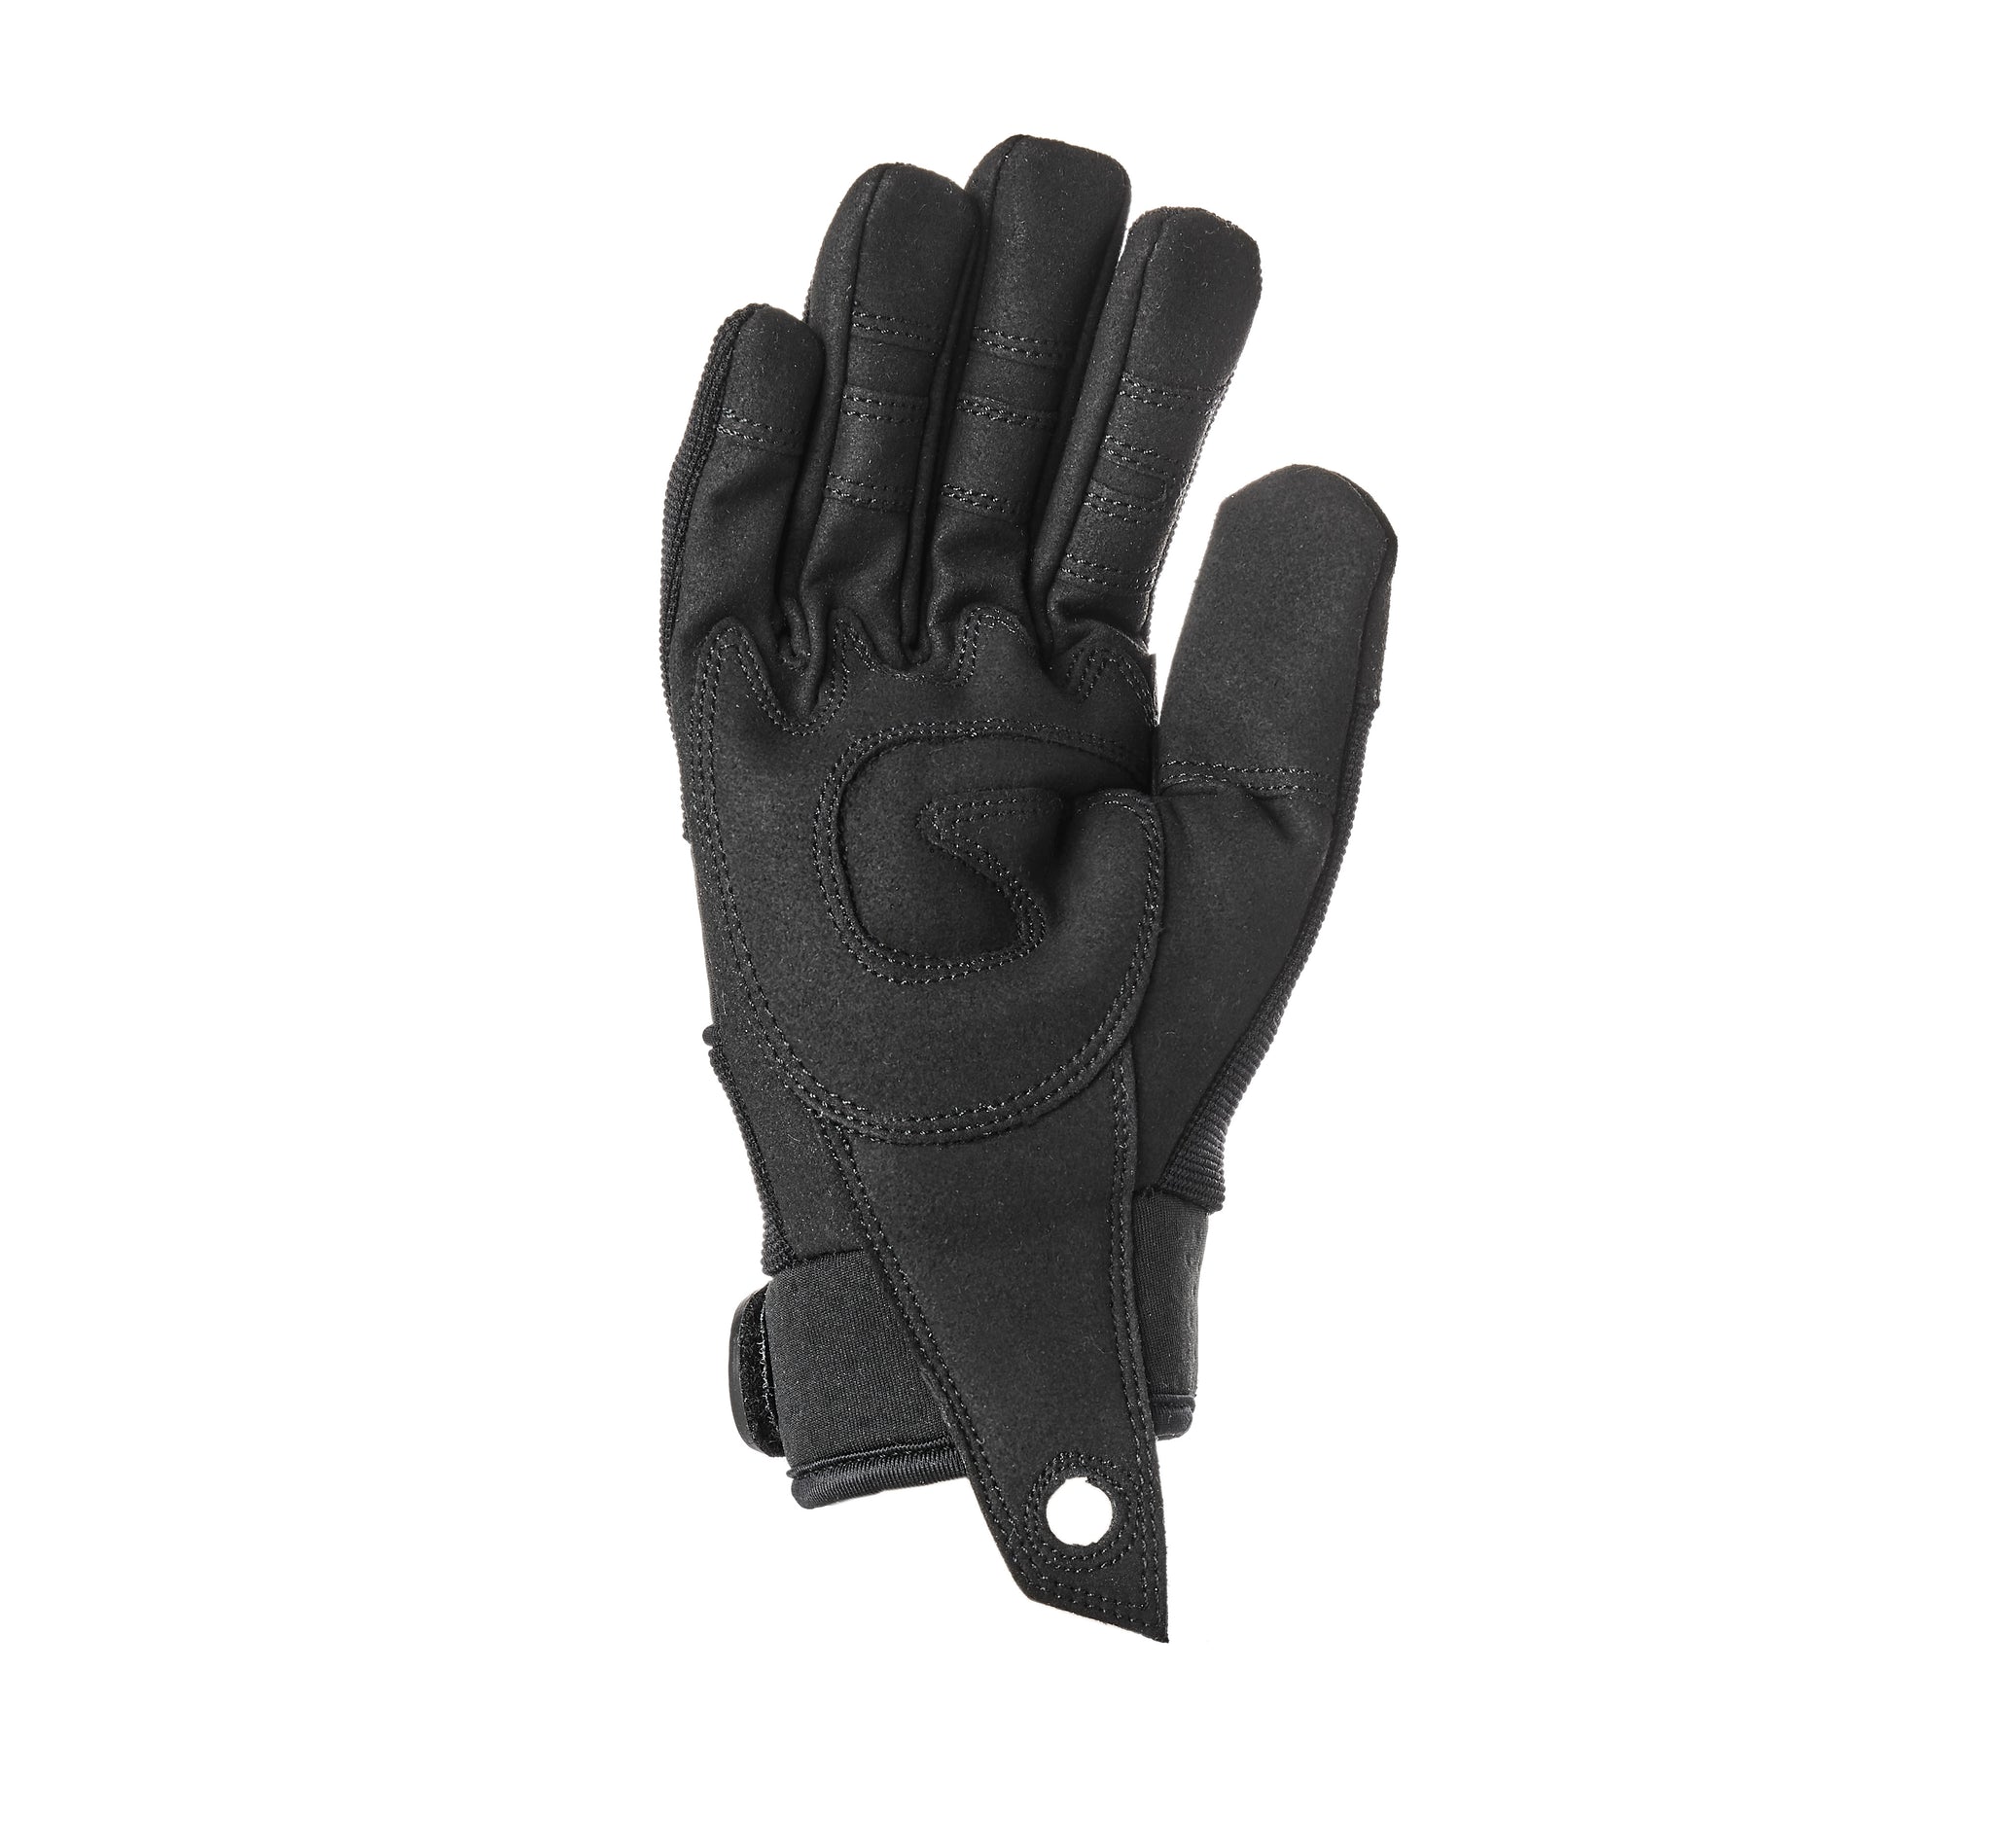 Workday Gloves - Full Finger